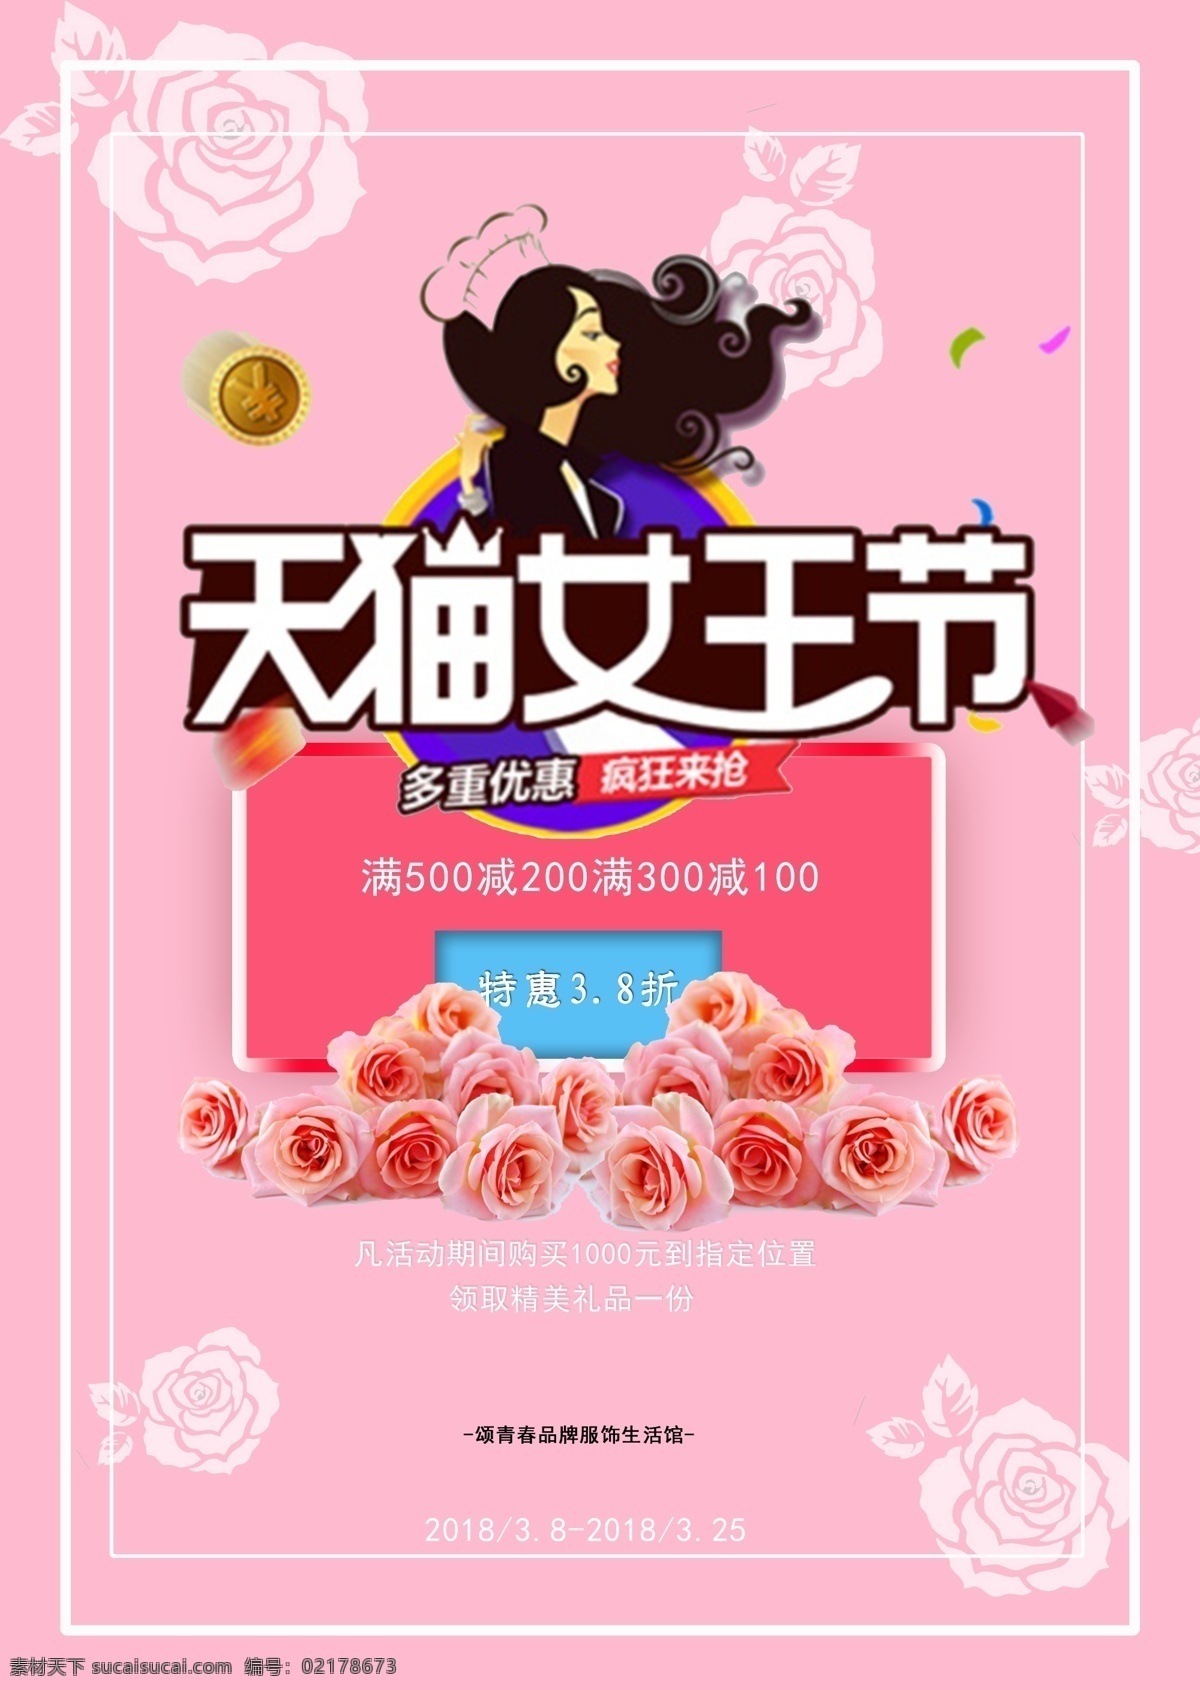 38 女神 节 宣传 促销 海报 促销海报 天猫 淘宝 卡通 简约 38女神节